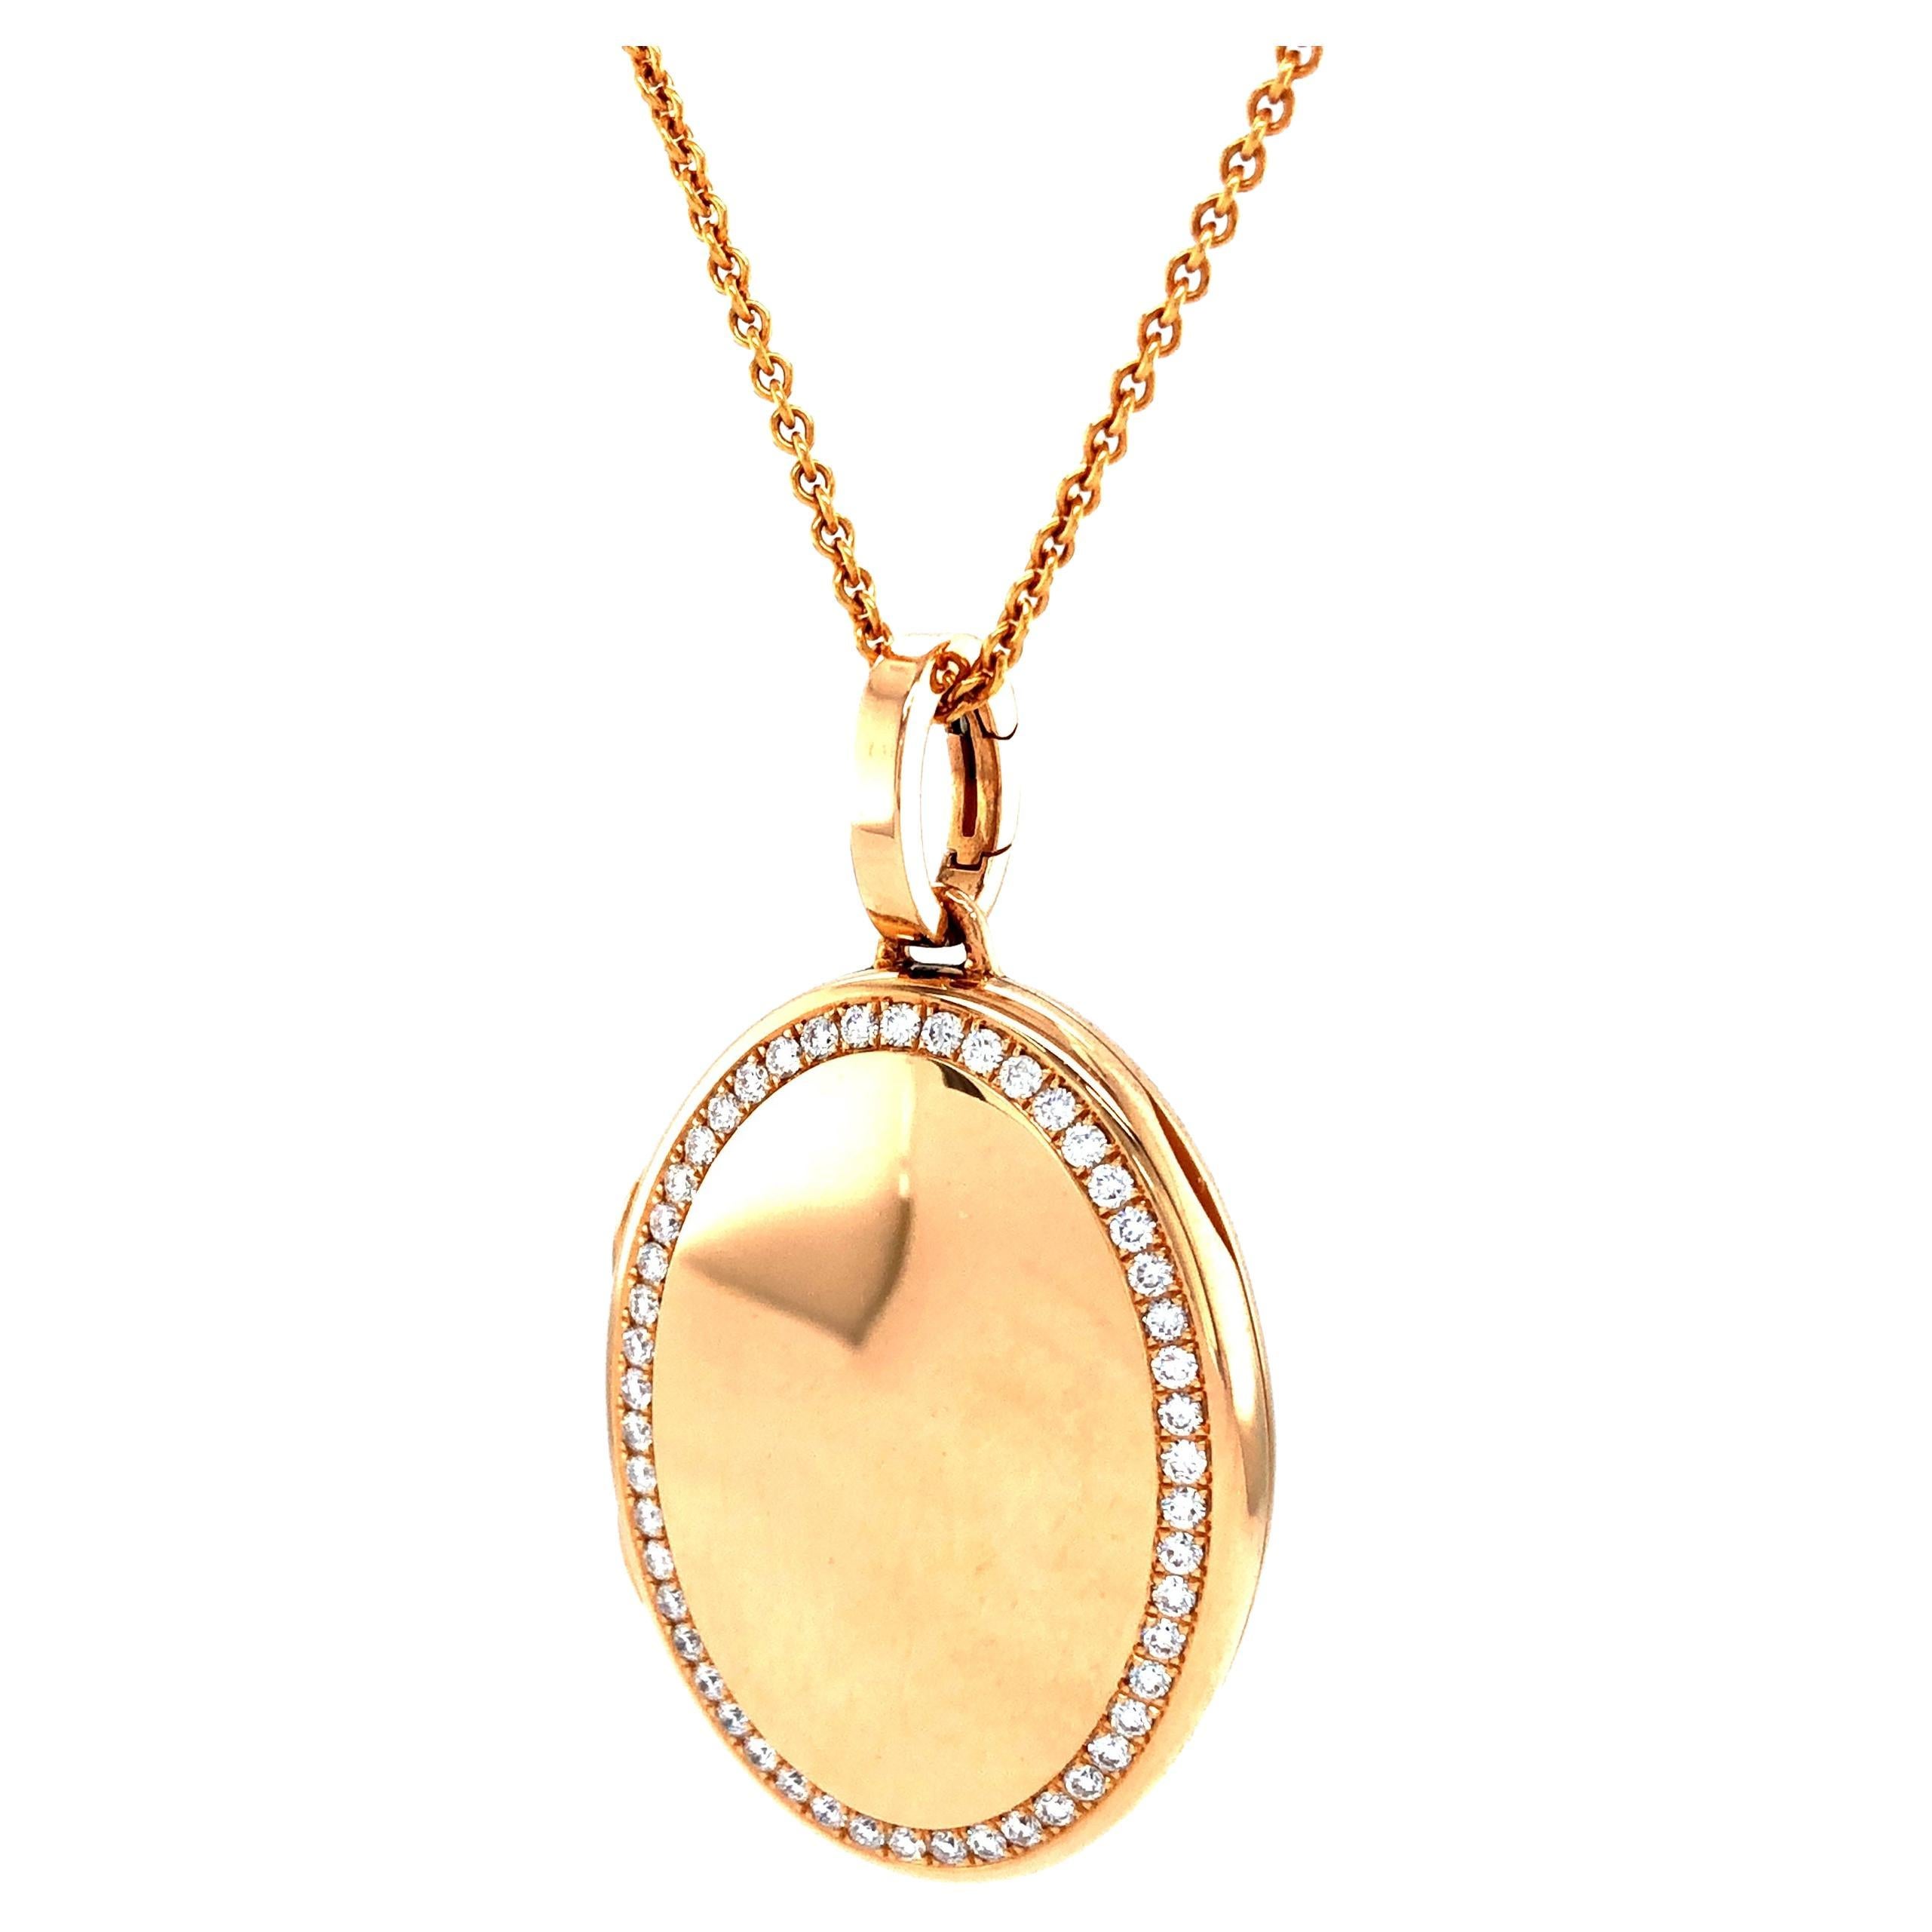 Mdaillon pendentif ovale personnalisable en or rose 18 carats avec 50 diamants de 0,61 carat H VS